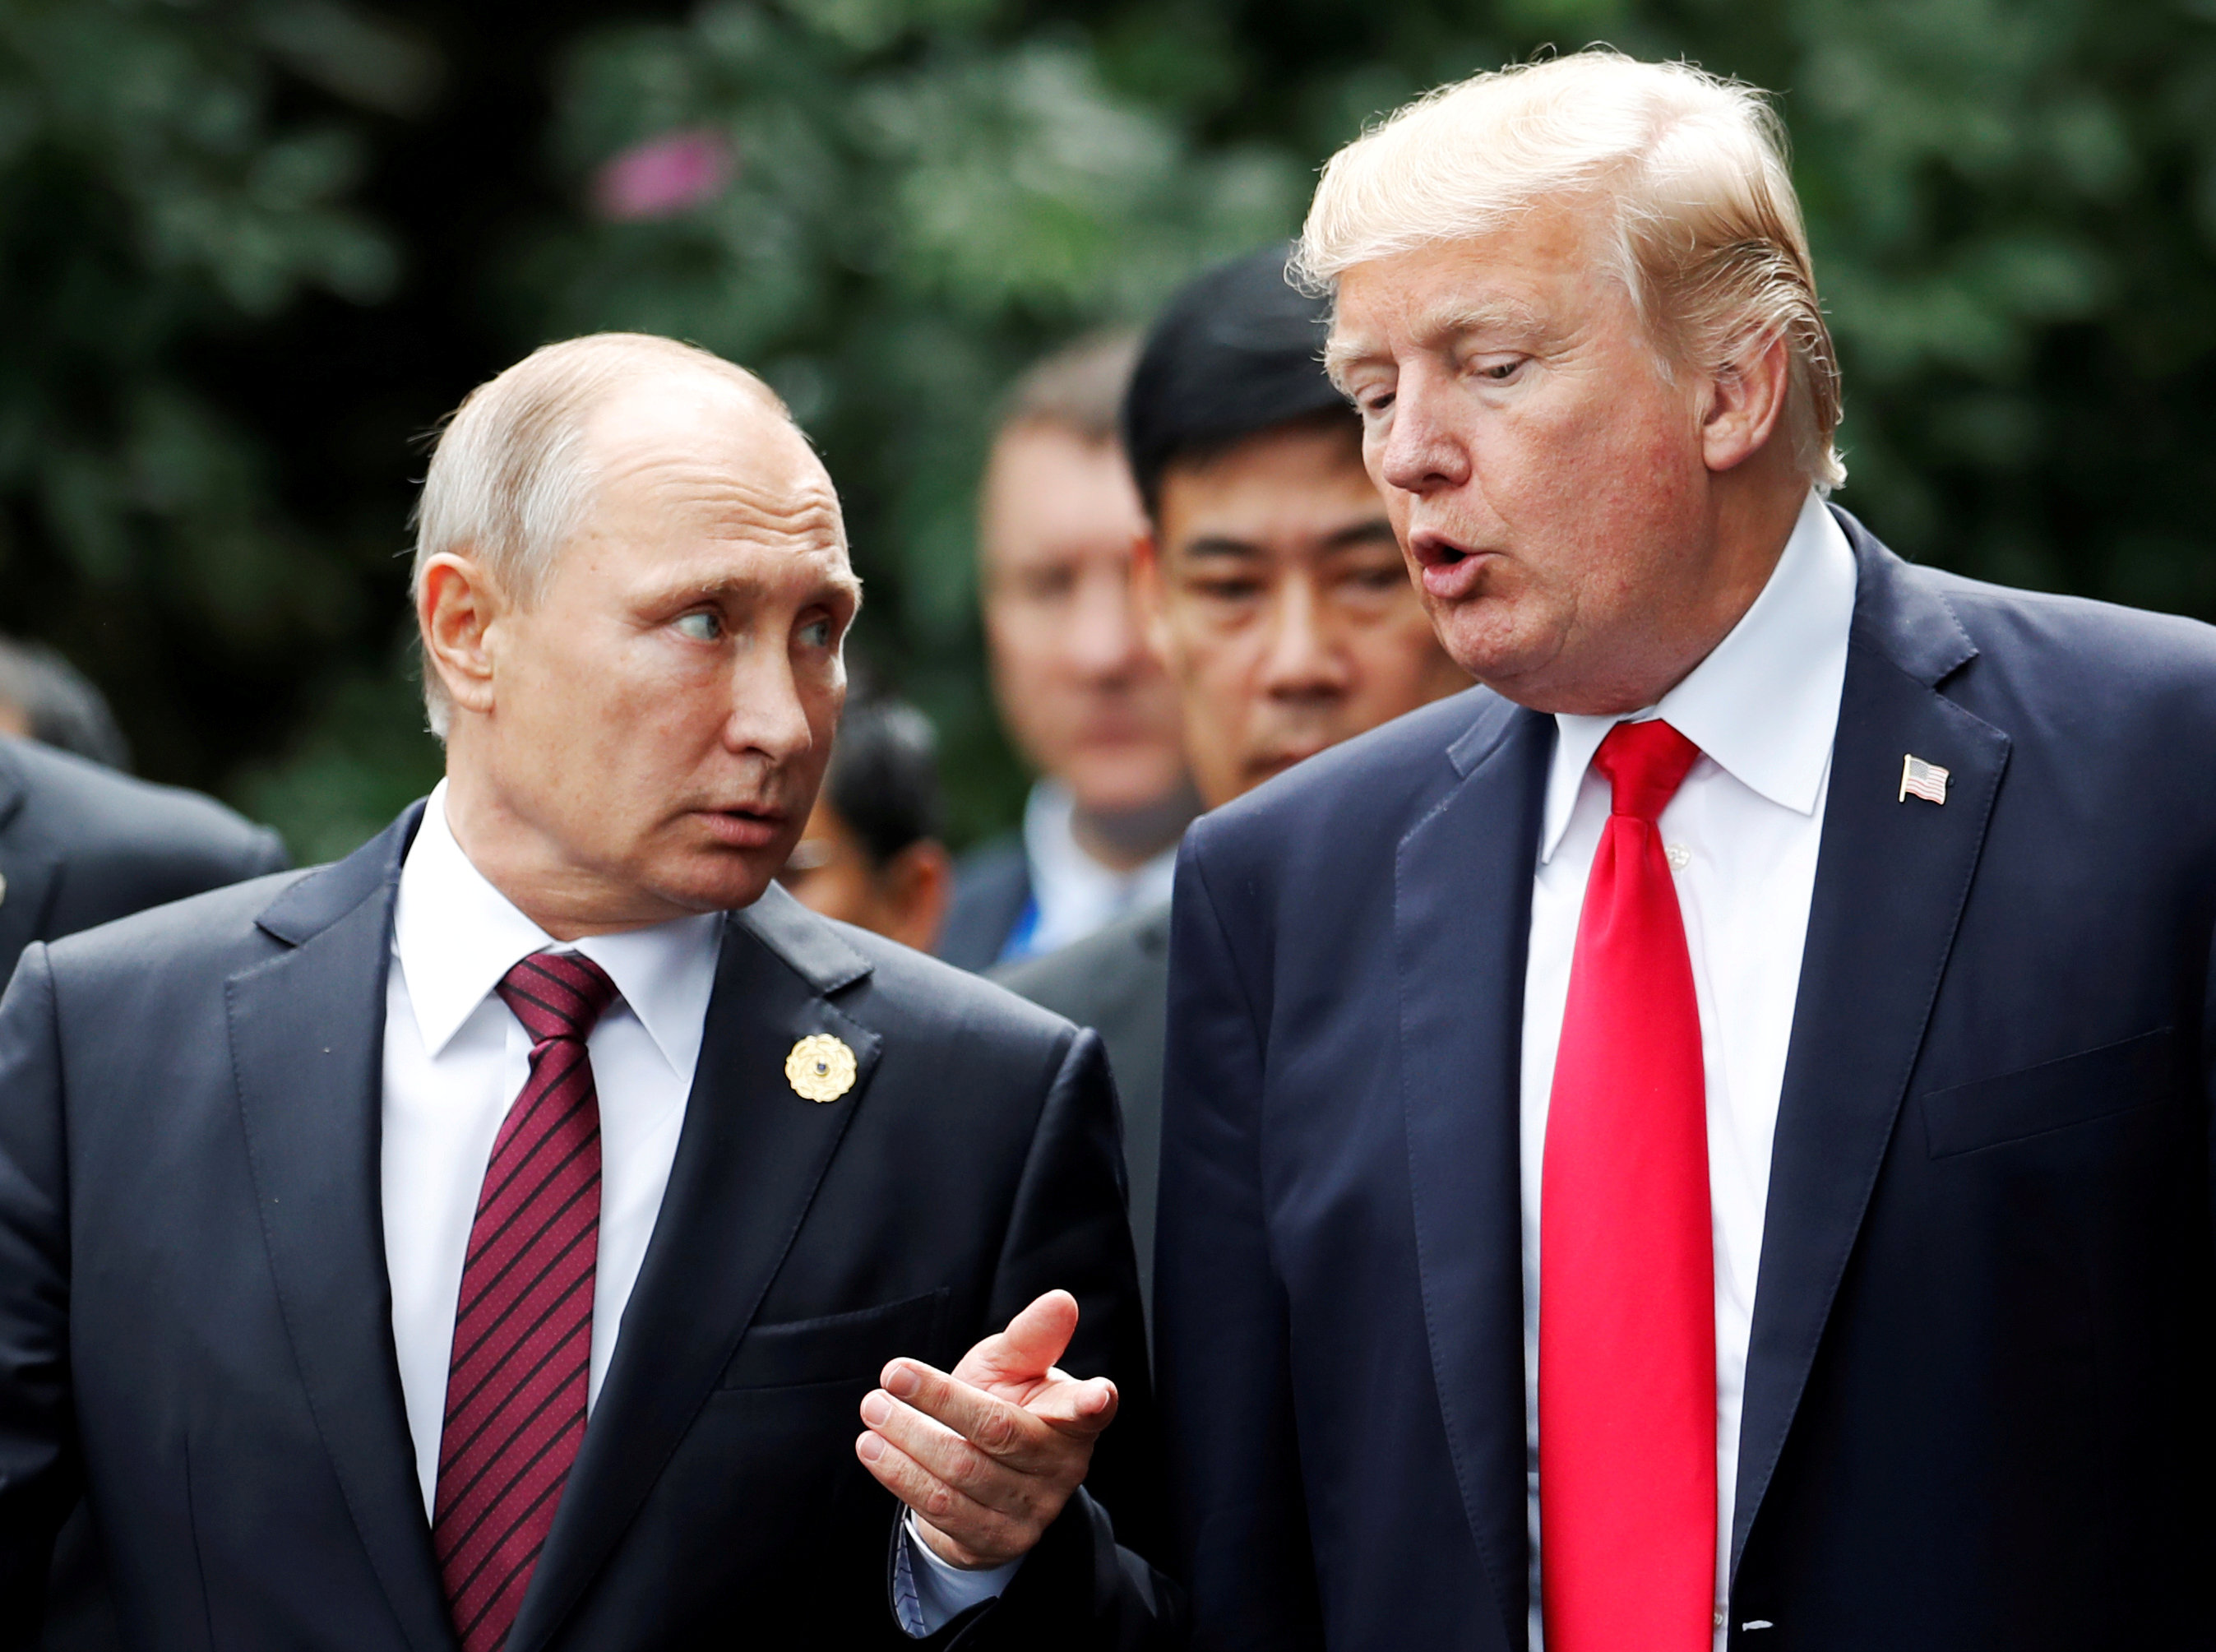 Putin dice que presunta injerencia rusa en EEUU fue “inventada” por oposición a Trump